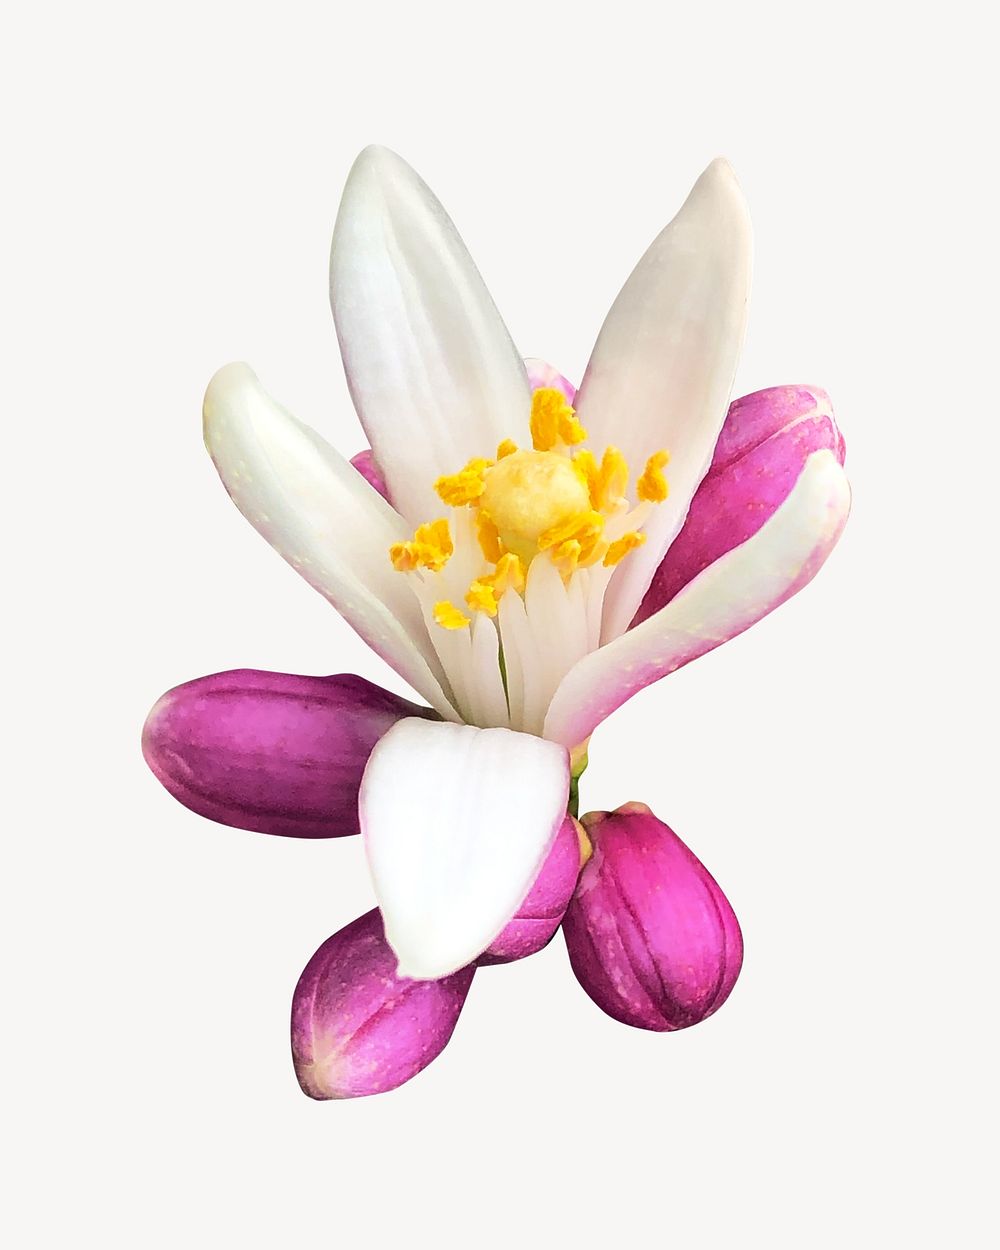 Lemon flower, isolated botanical image